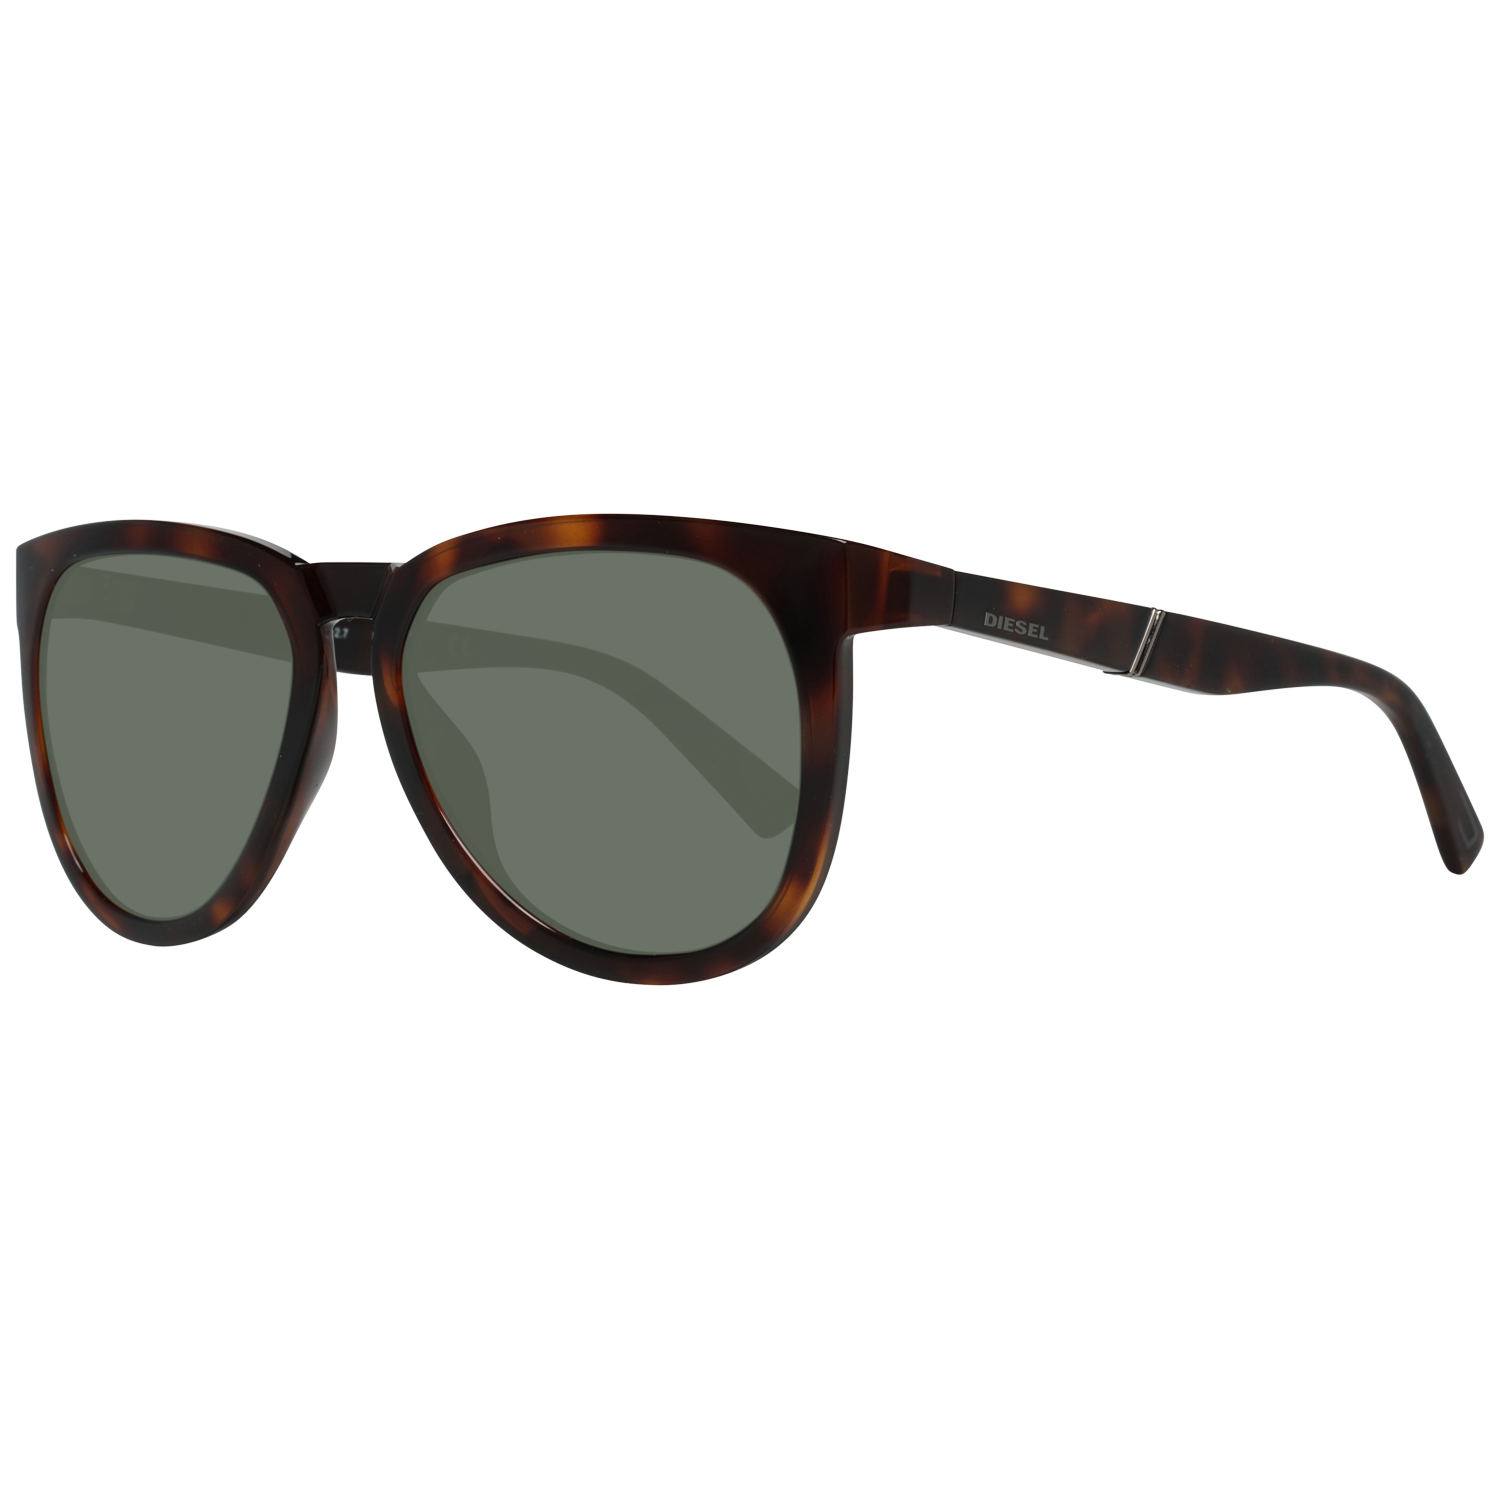 Diesel Sunglasses DL0263 52N 54